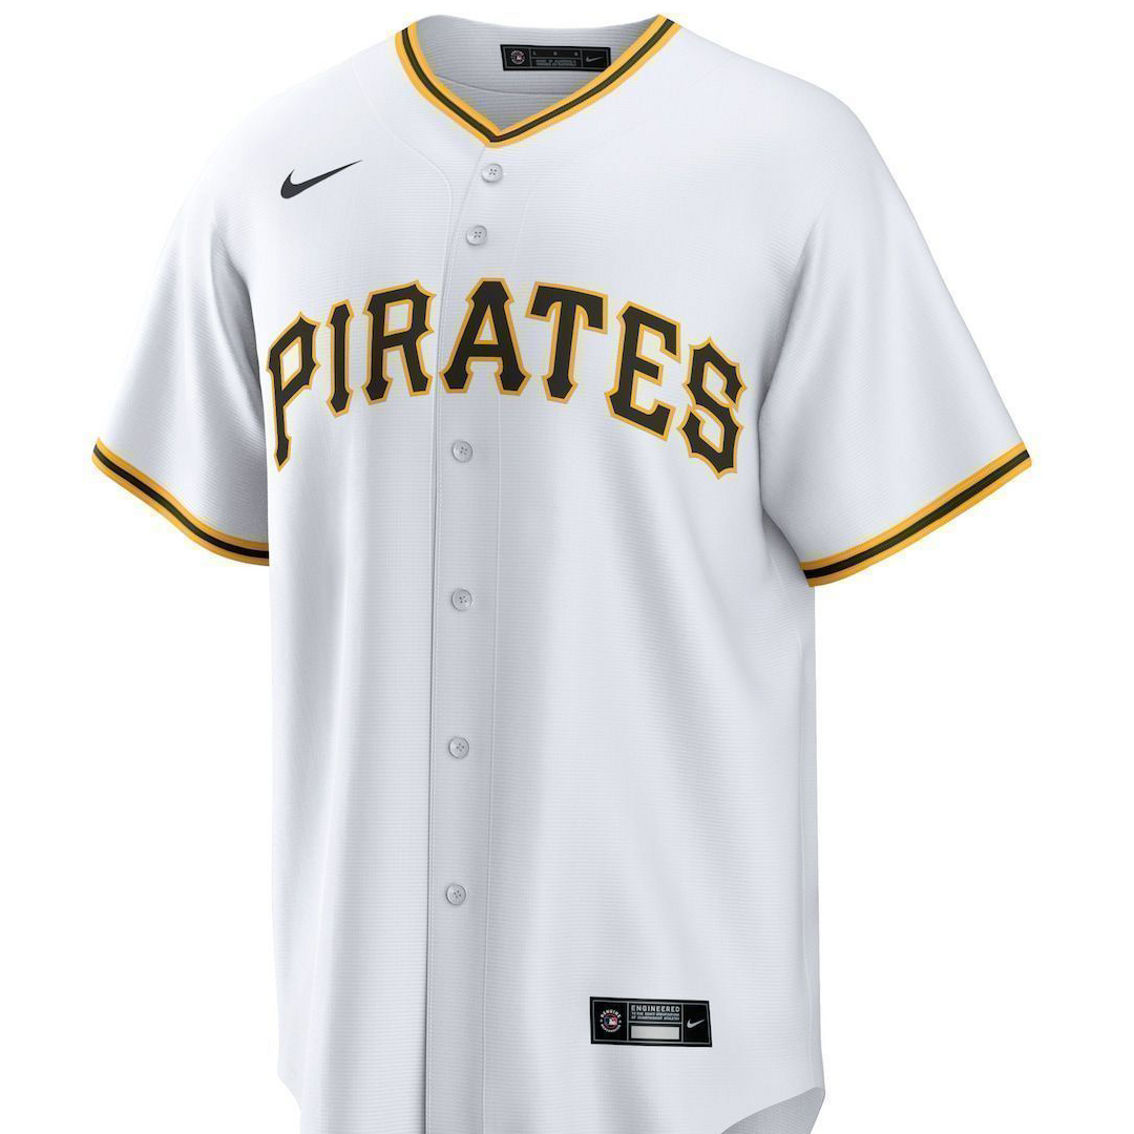 pirates uniforms insignia